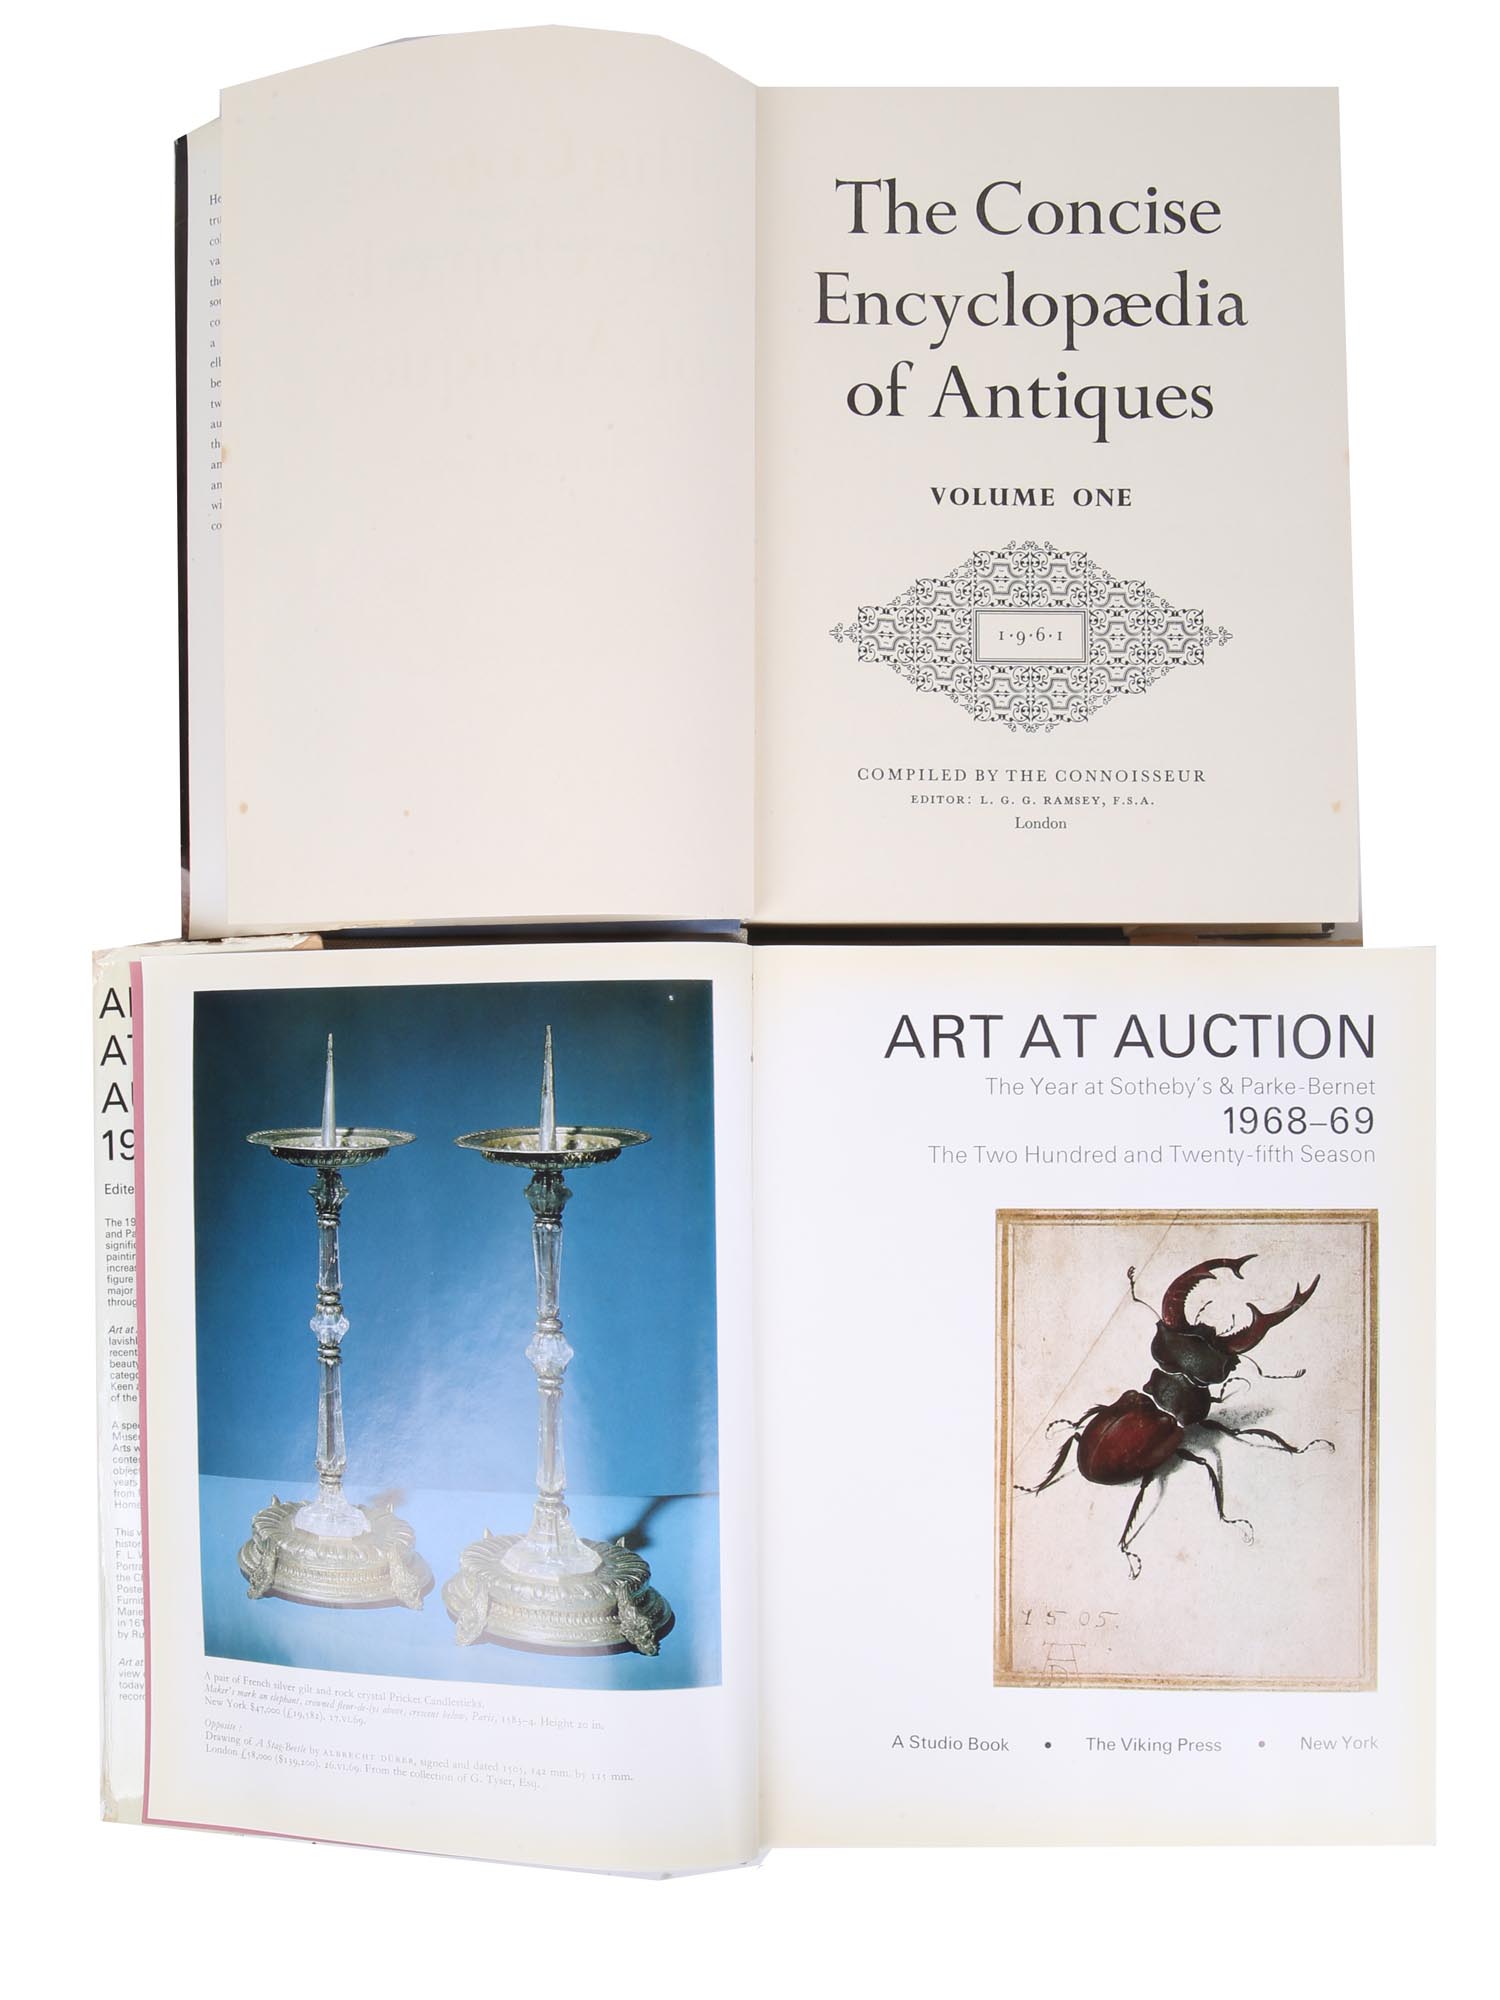 SOTHEBYS ANTIQUES, ART AT AUCTION, BOOKS DOCS PIC-3